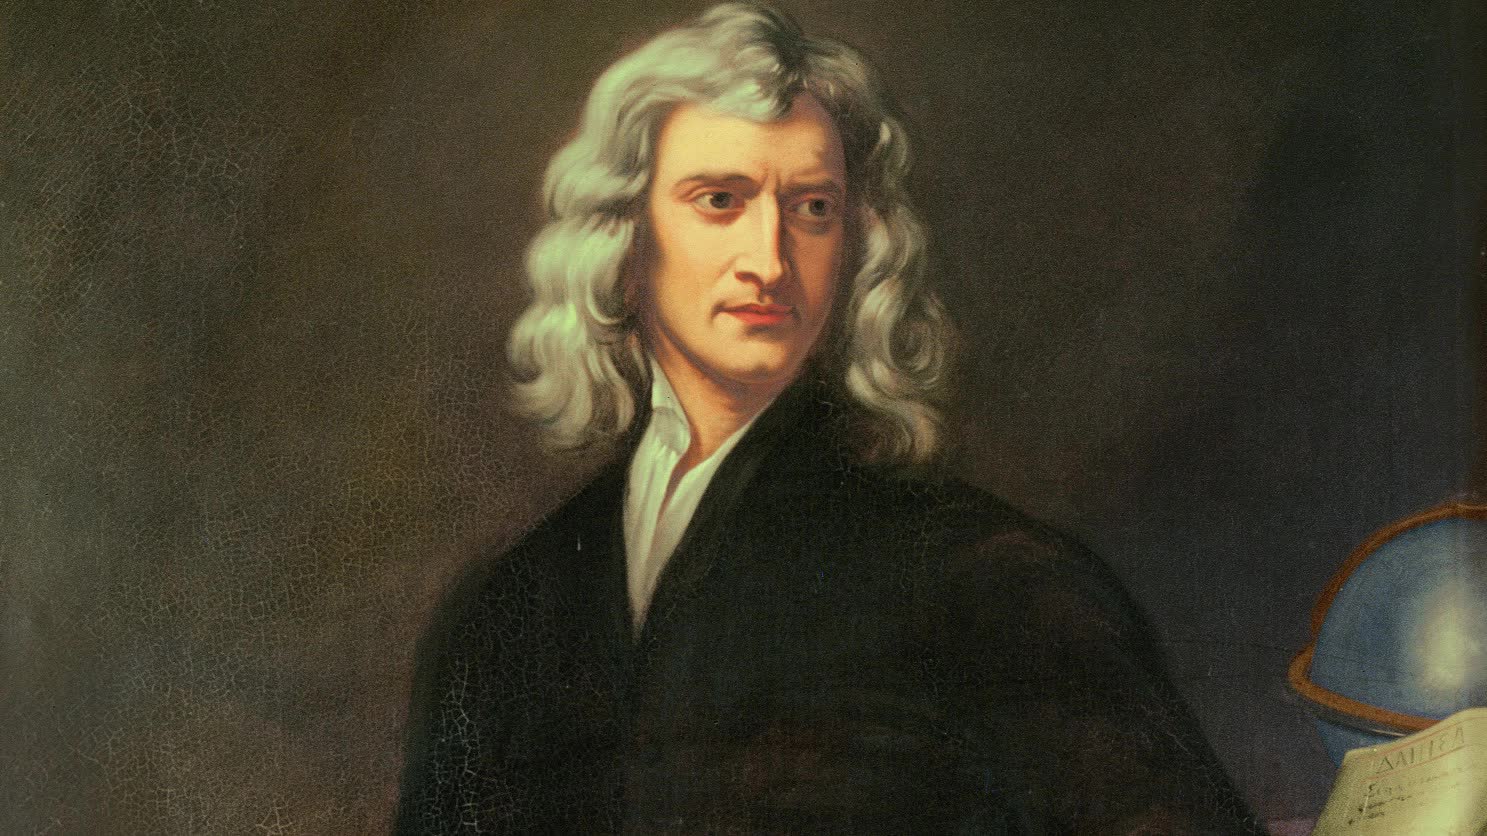 Sự thật về giai thoại quả táo rơi trúng đầu Newton để nghĩ ra định luật hấp dẫn mà cả thế giới vẫn tin suốt 400 năm qua - Ảnh 1.